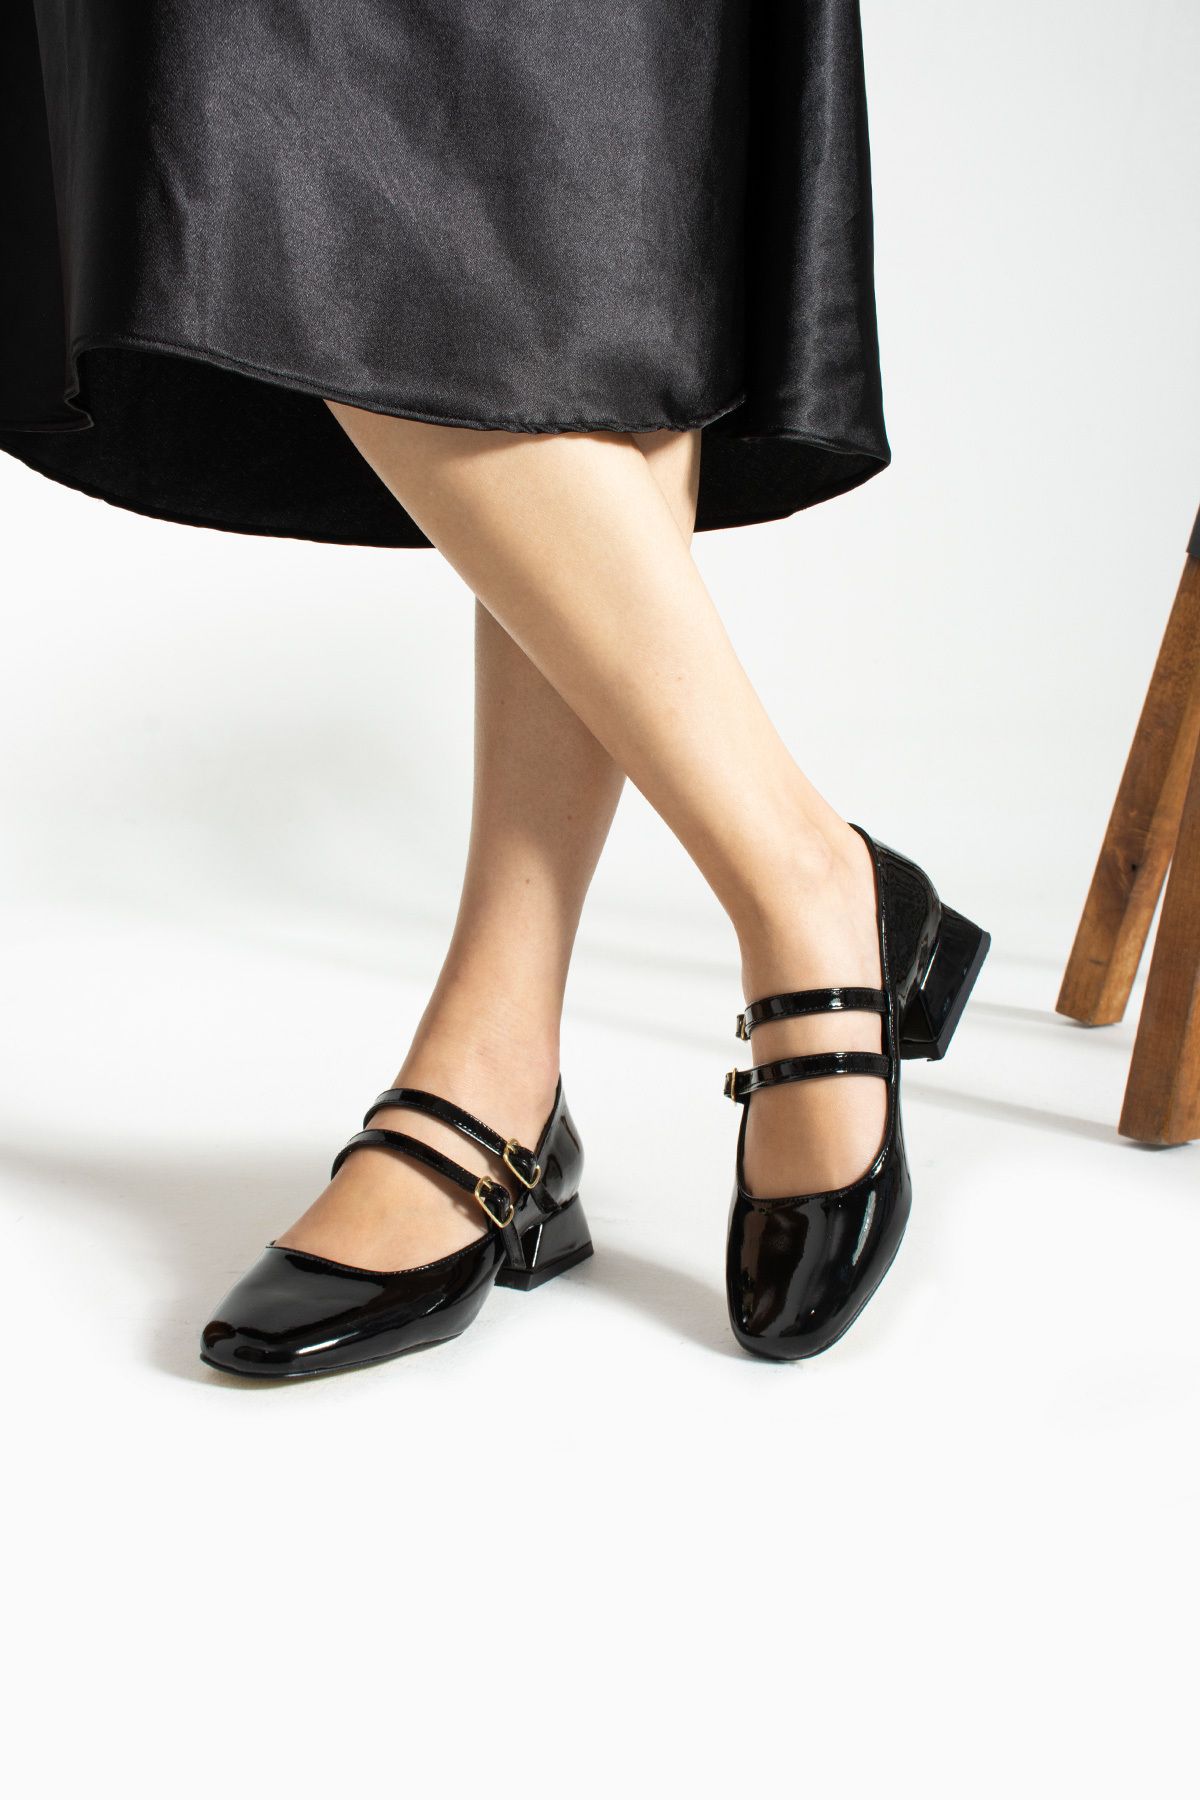 İnan Ayakkabı Kadın Siyah Rugan Renk Çift Toka Detaylı Topuklu Ayakkabı Babet (3 CM)